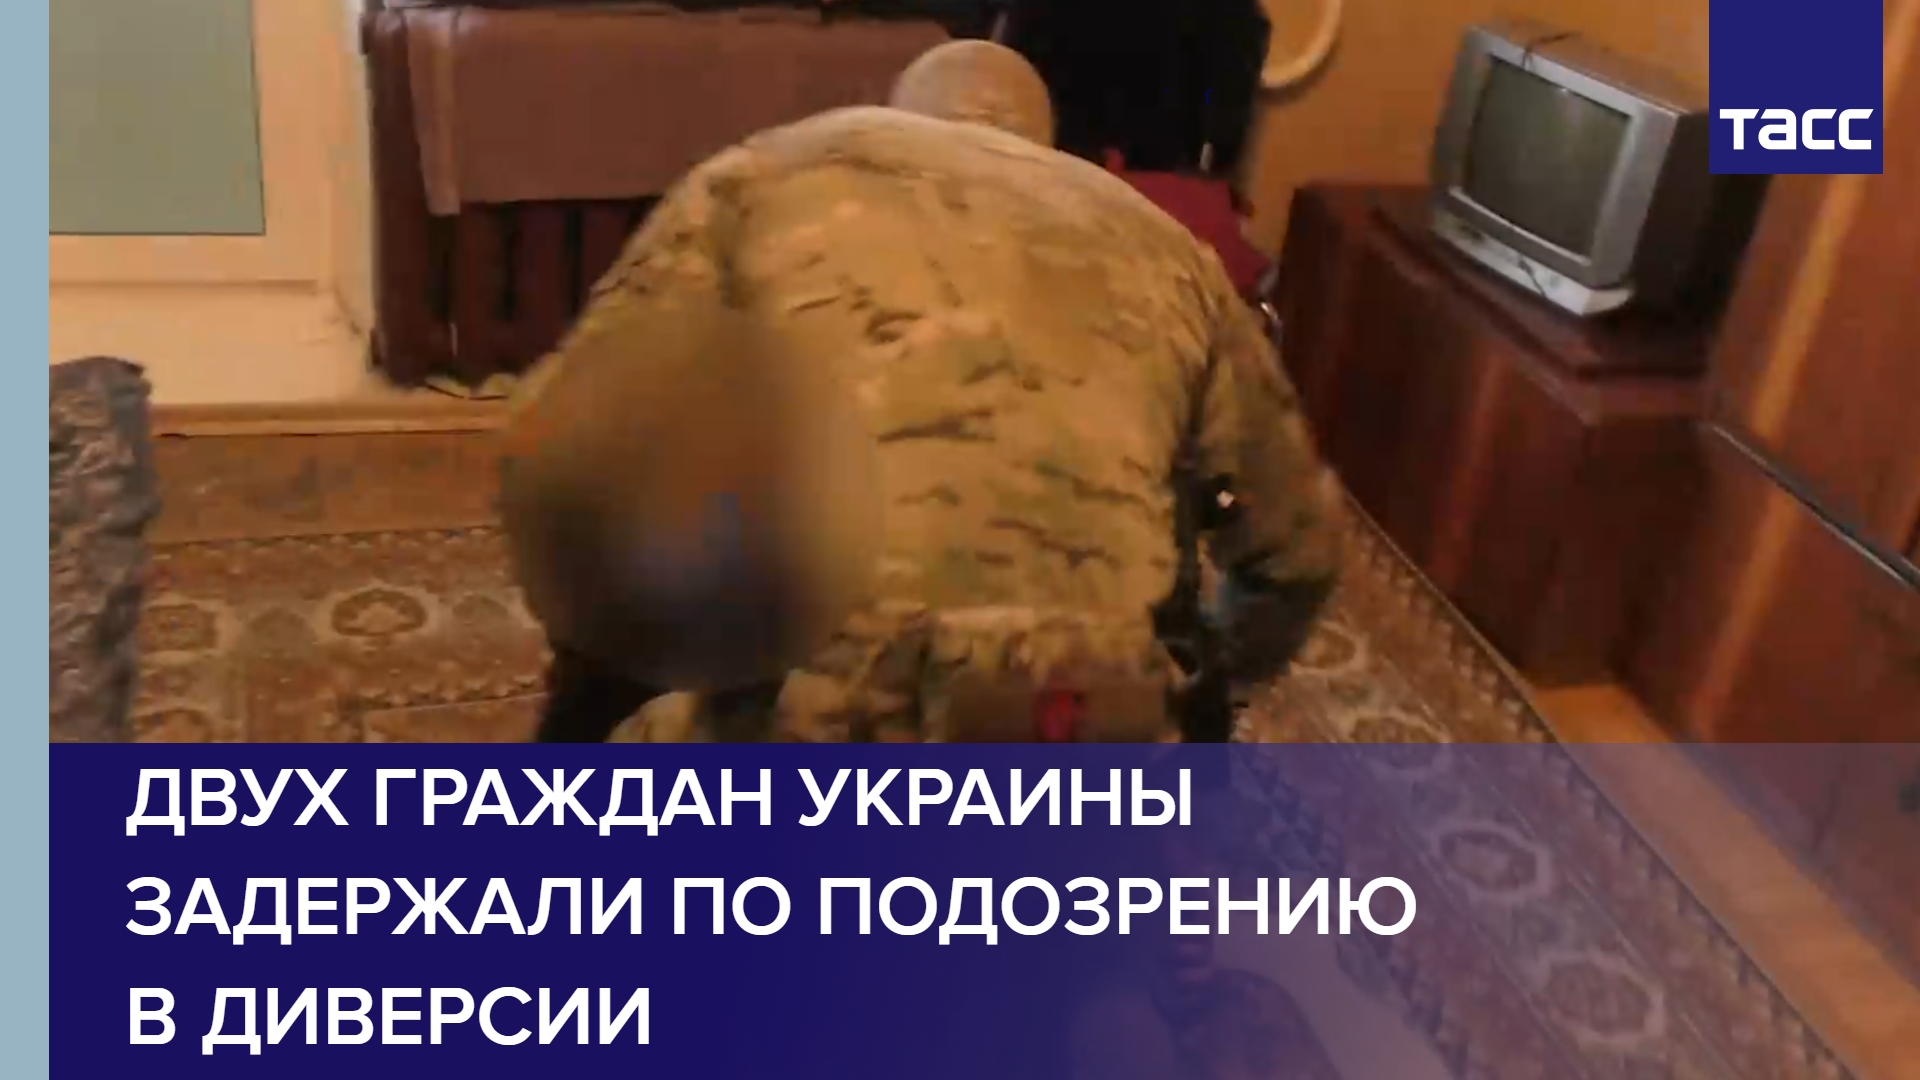 Двух граждан Украины задержали по подозрению в диверсии в Запорожской области